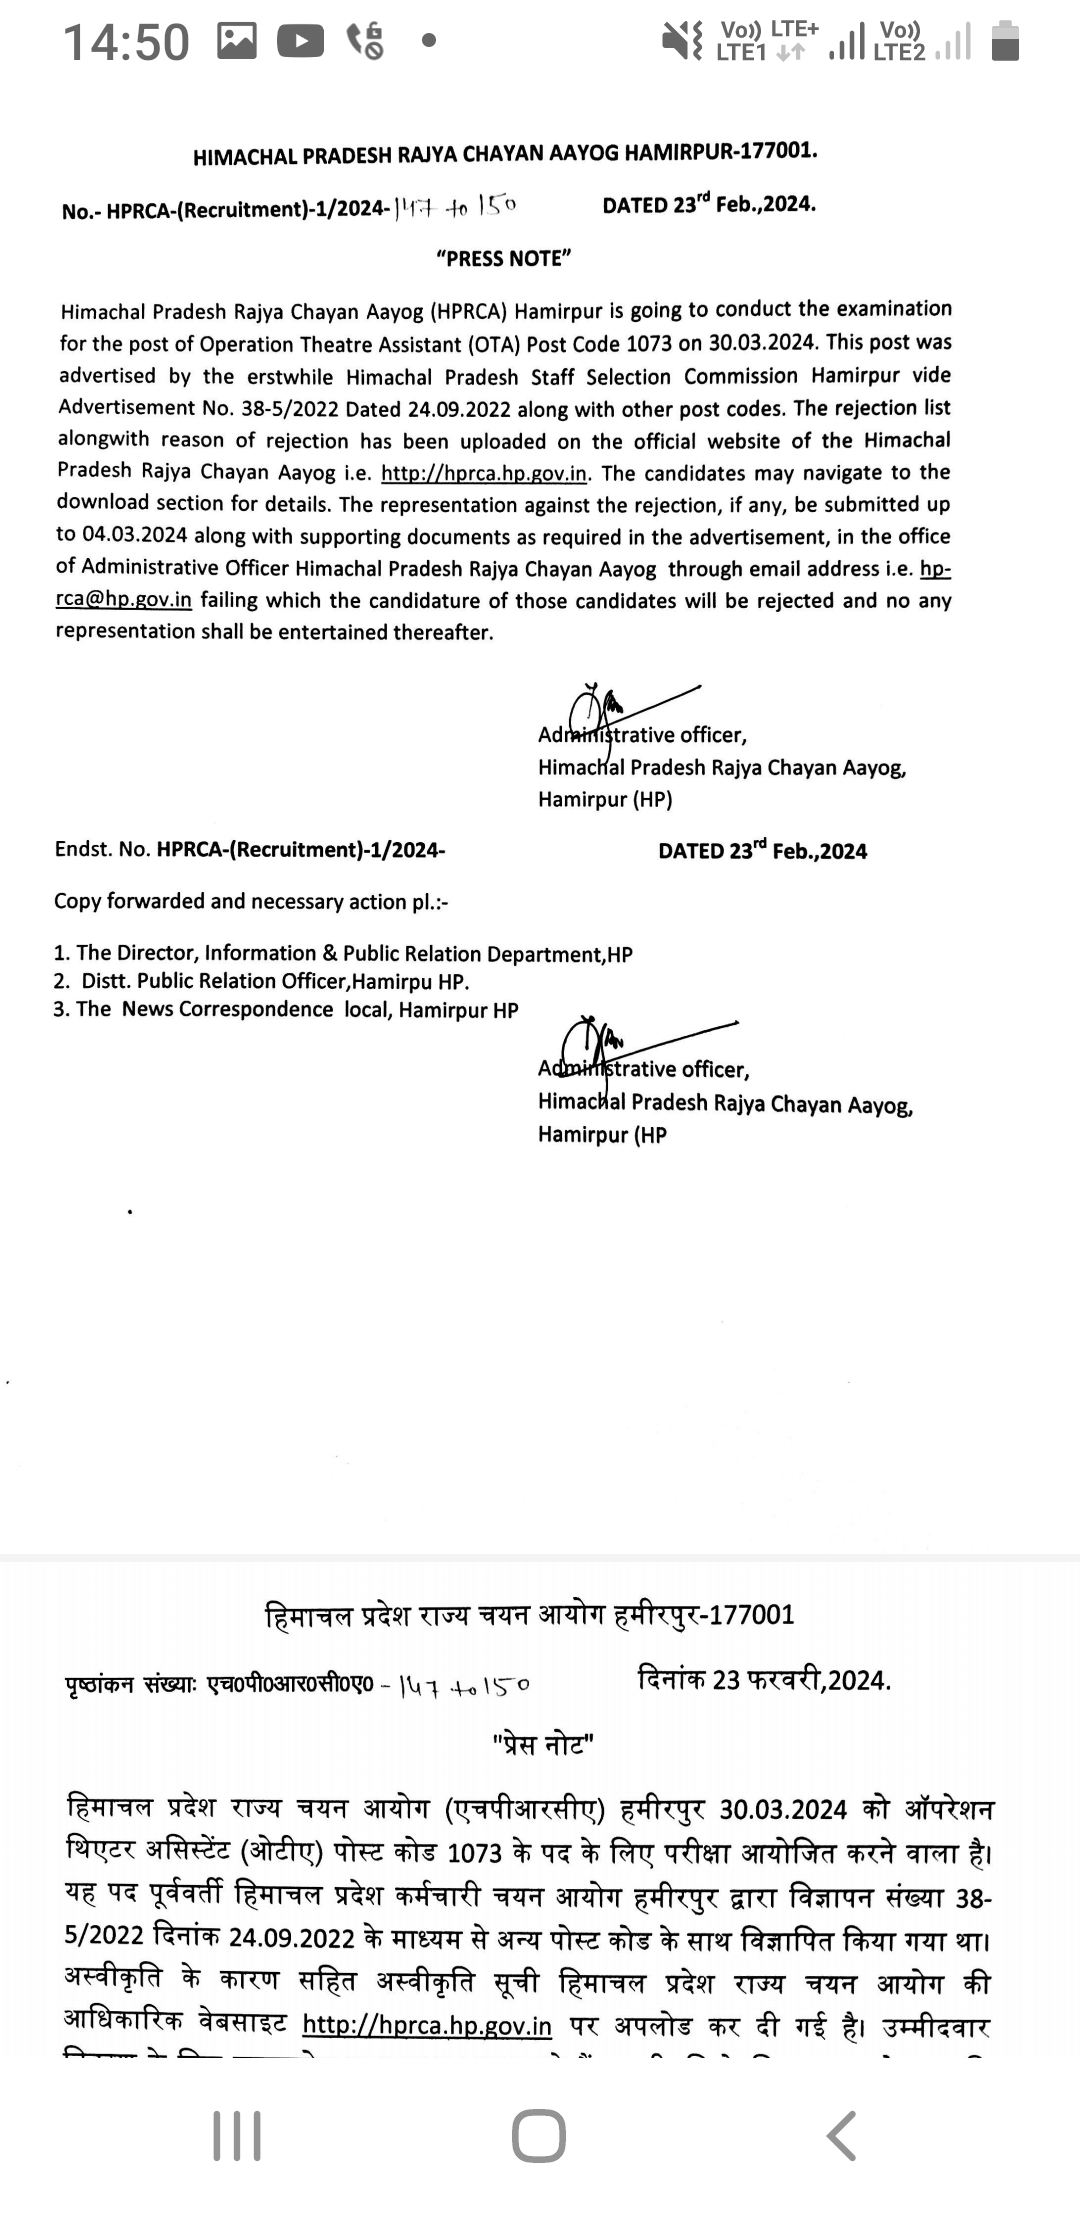 हिमाचल प्रदेश चयन आयोग ने भर्ती शुरू की,ऑपरेशन थिएटर असिस्टेंट कोड 1073 की 30 मार्च को परीक्षा